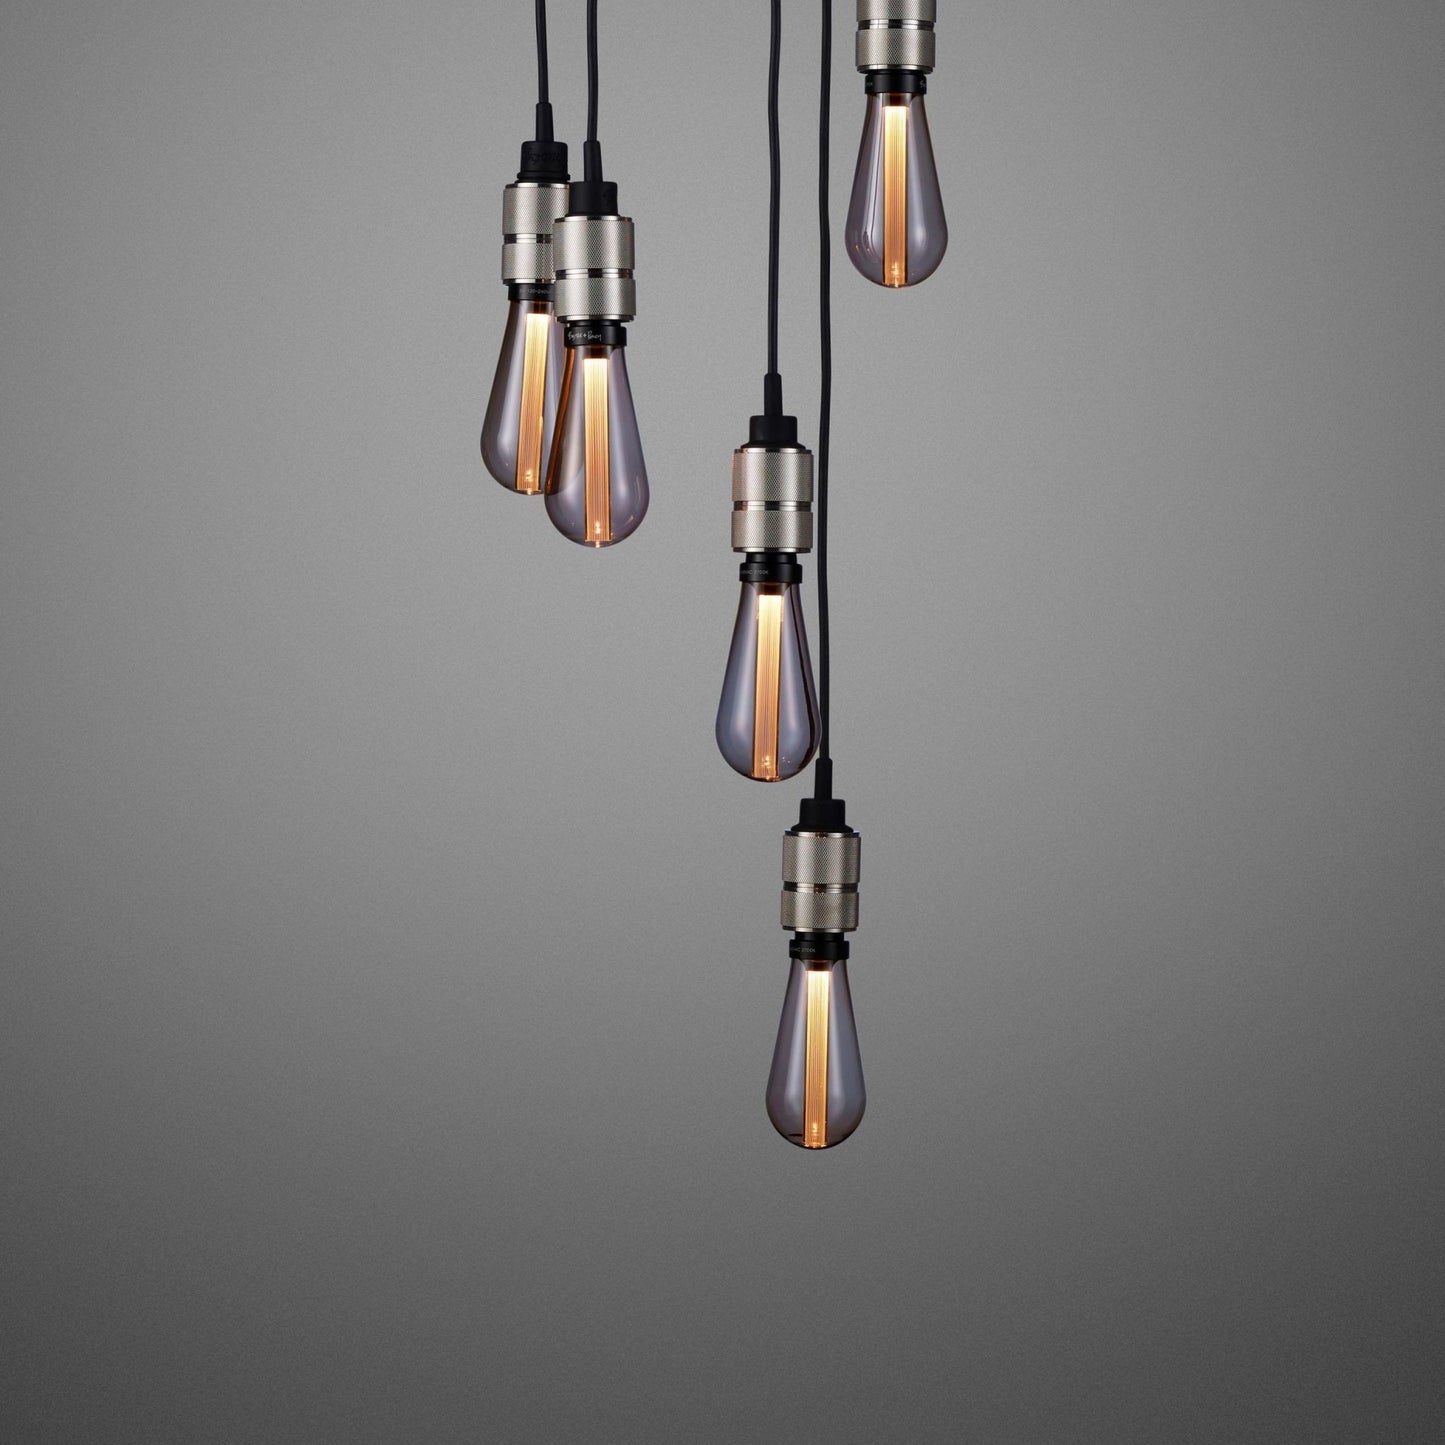 Hooked Pendant Light Chandelier 6.0 / Brass / Smoked Bronze / Steel - |VESIMI Design| Luxury and Rustic bathrooms online